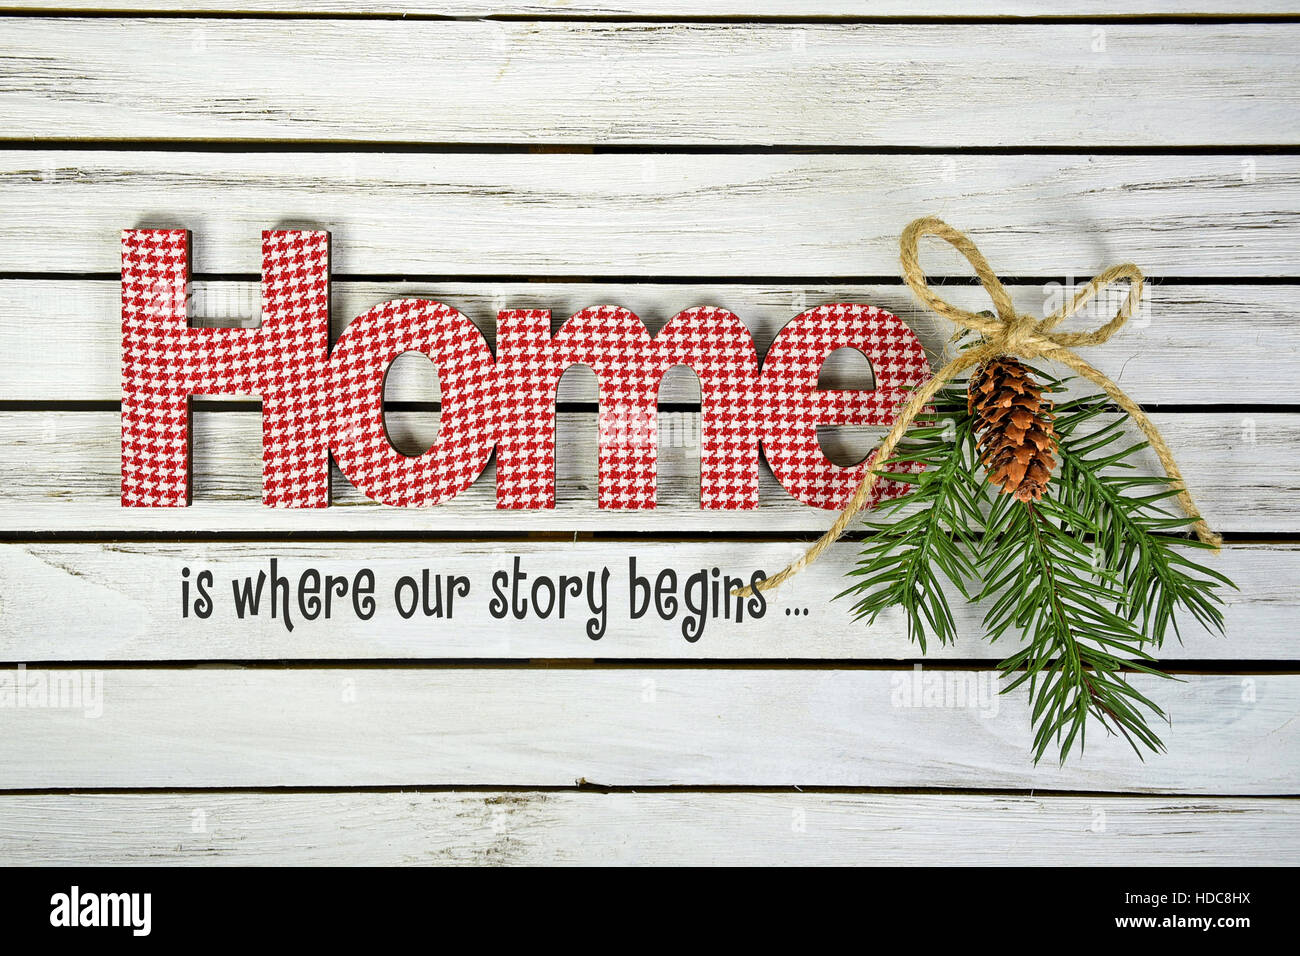 rot-weiß karierte Hause Schild mit inspirierenden Zitat Kiefer und Bindfäden Schleifchen weiß getünchten Holz Stockfoto